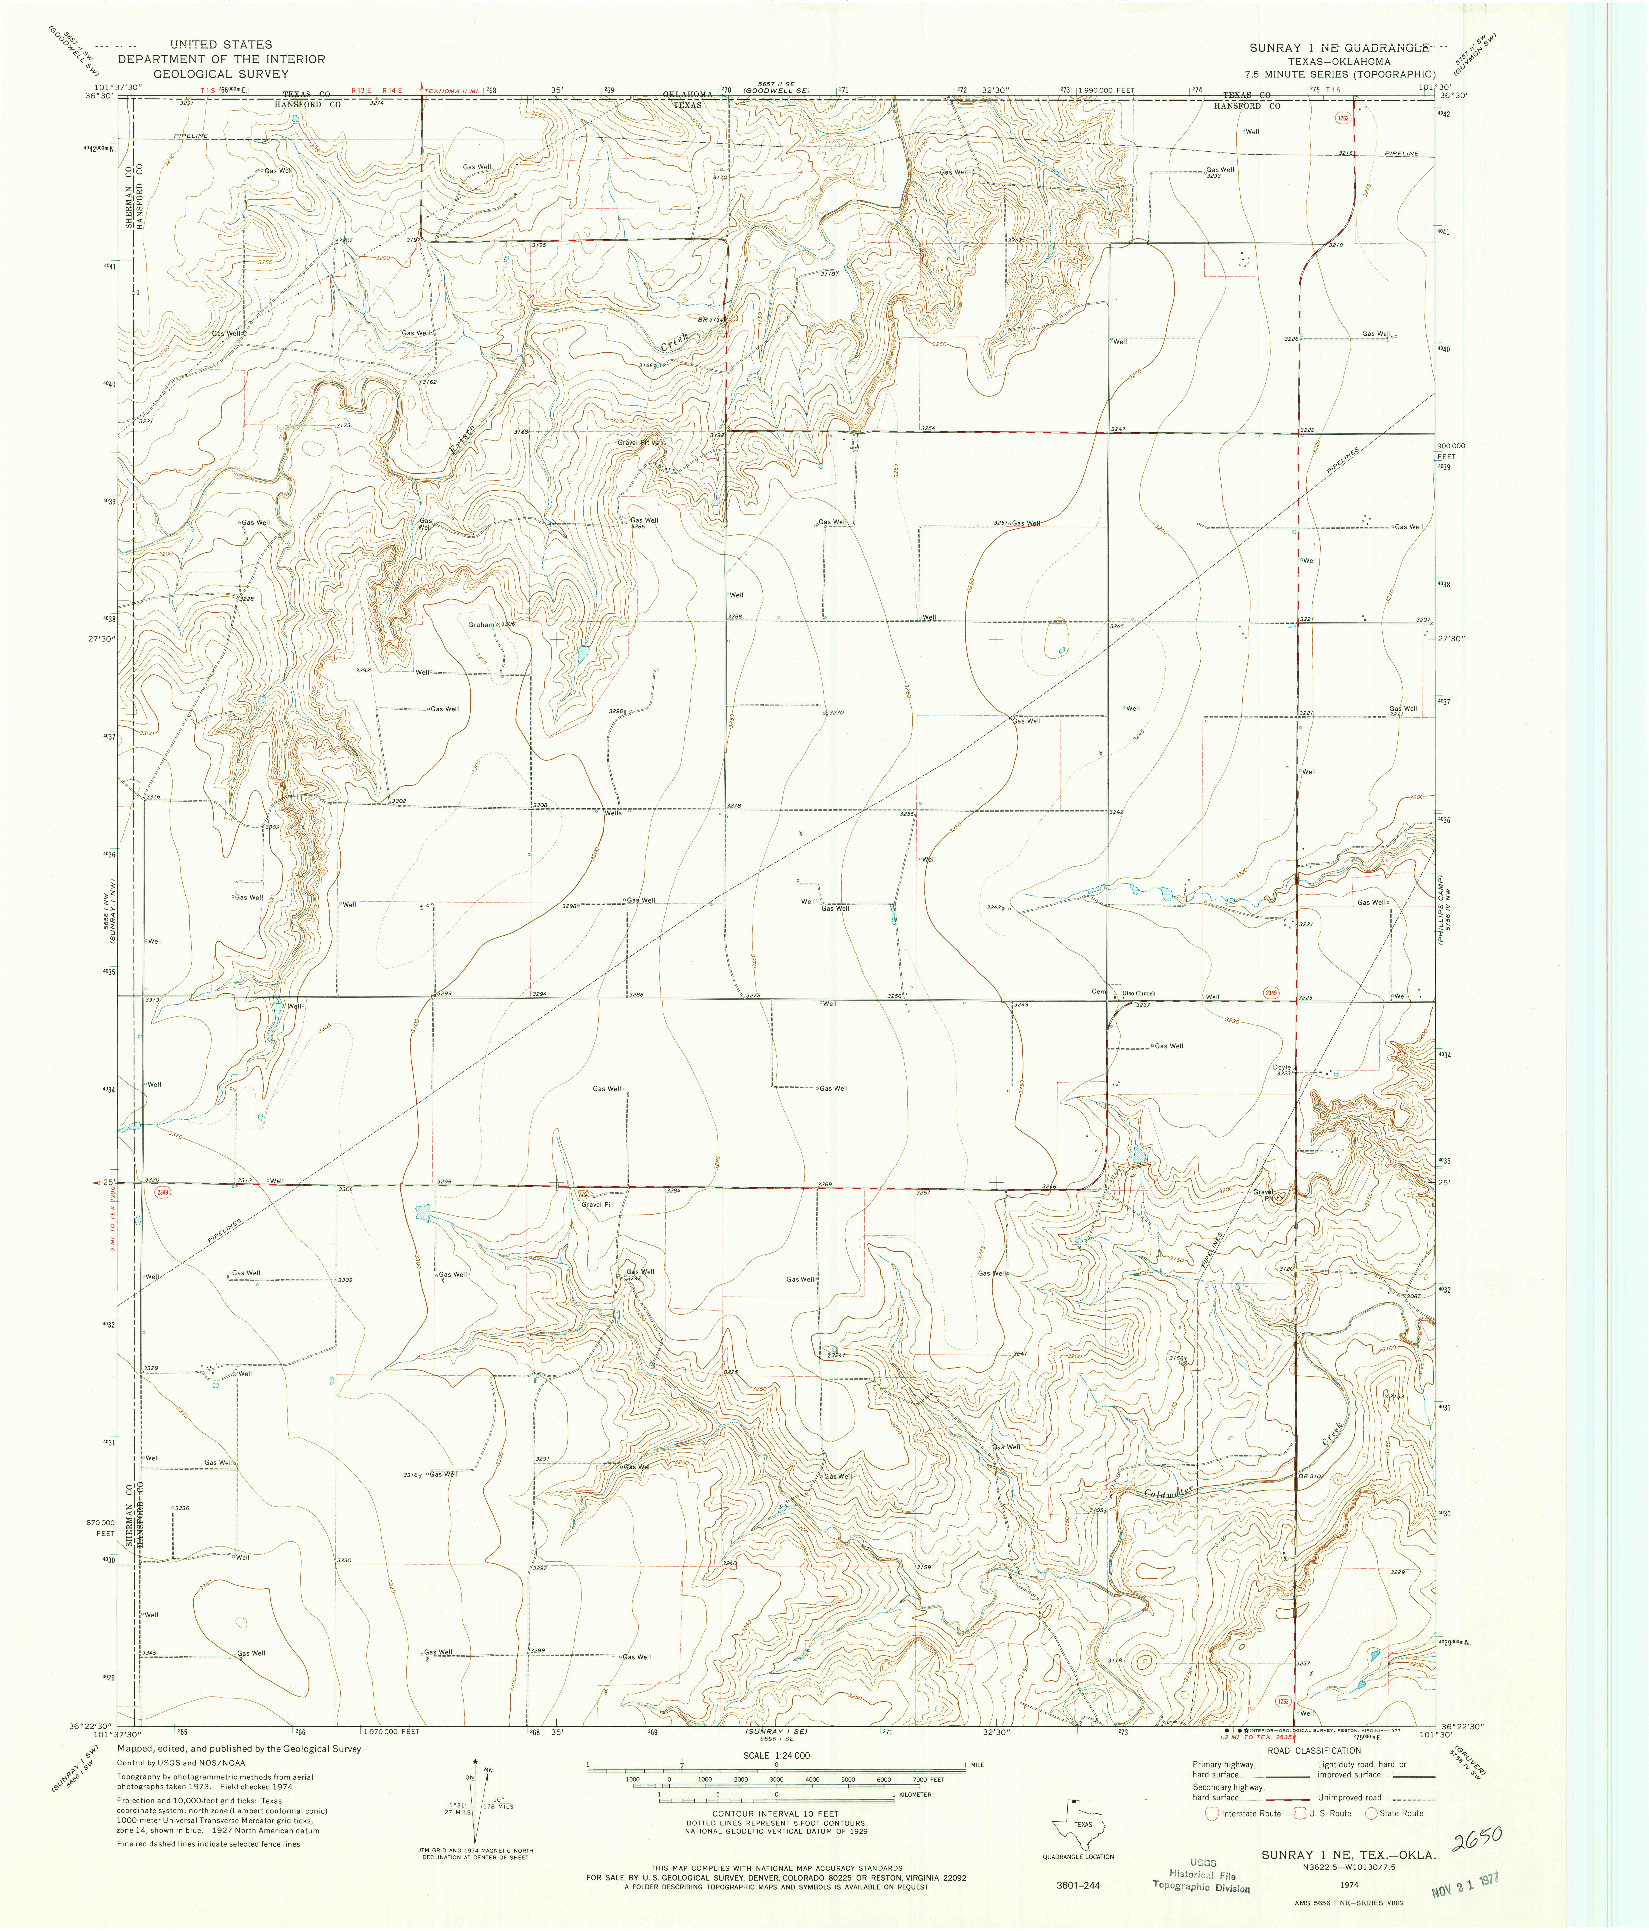 USGS 1:24000-SCALE QUADRANGLE FOR SUNRAY 1 NE, TX 1974